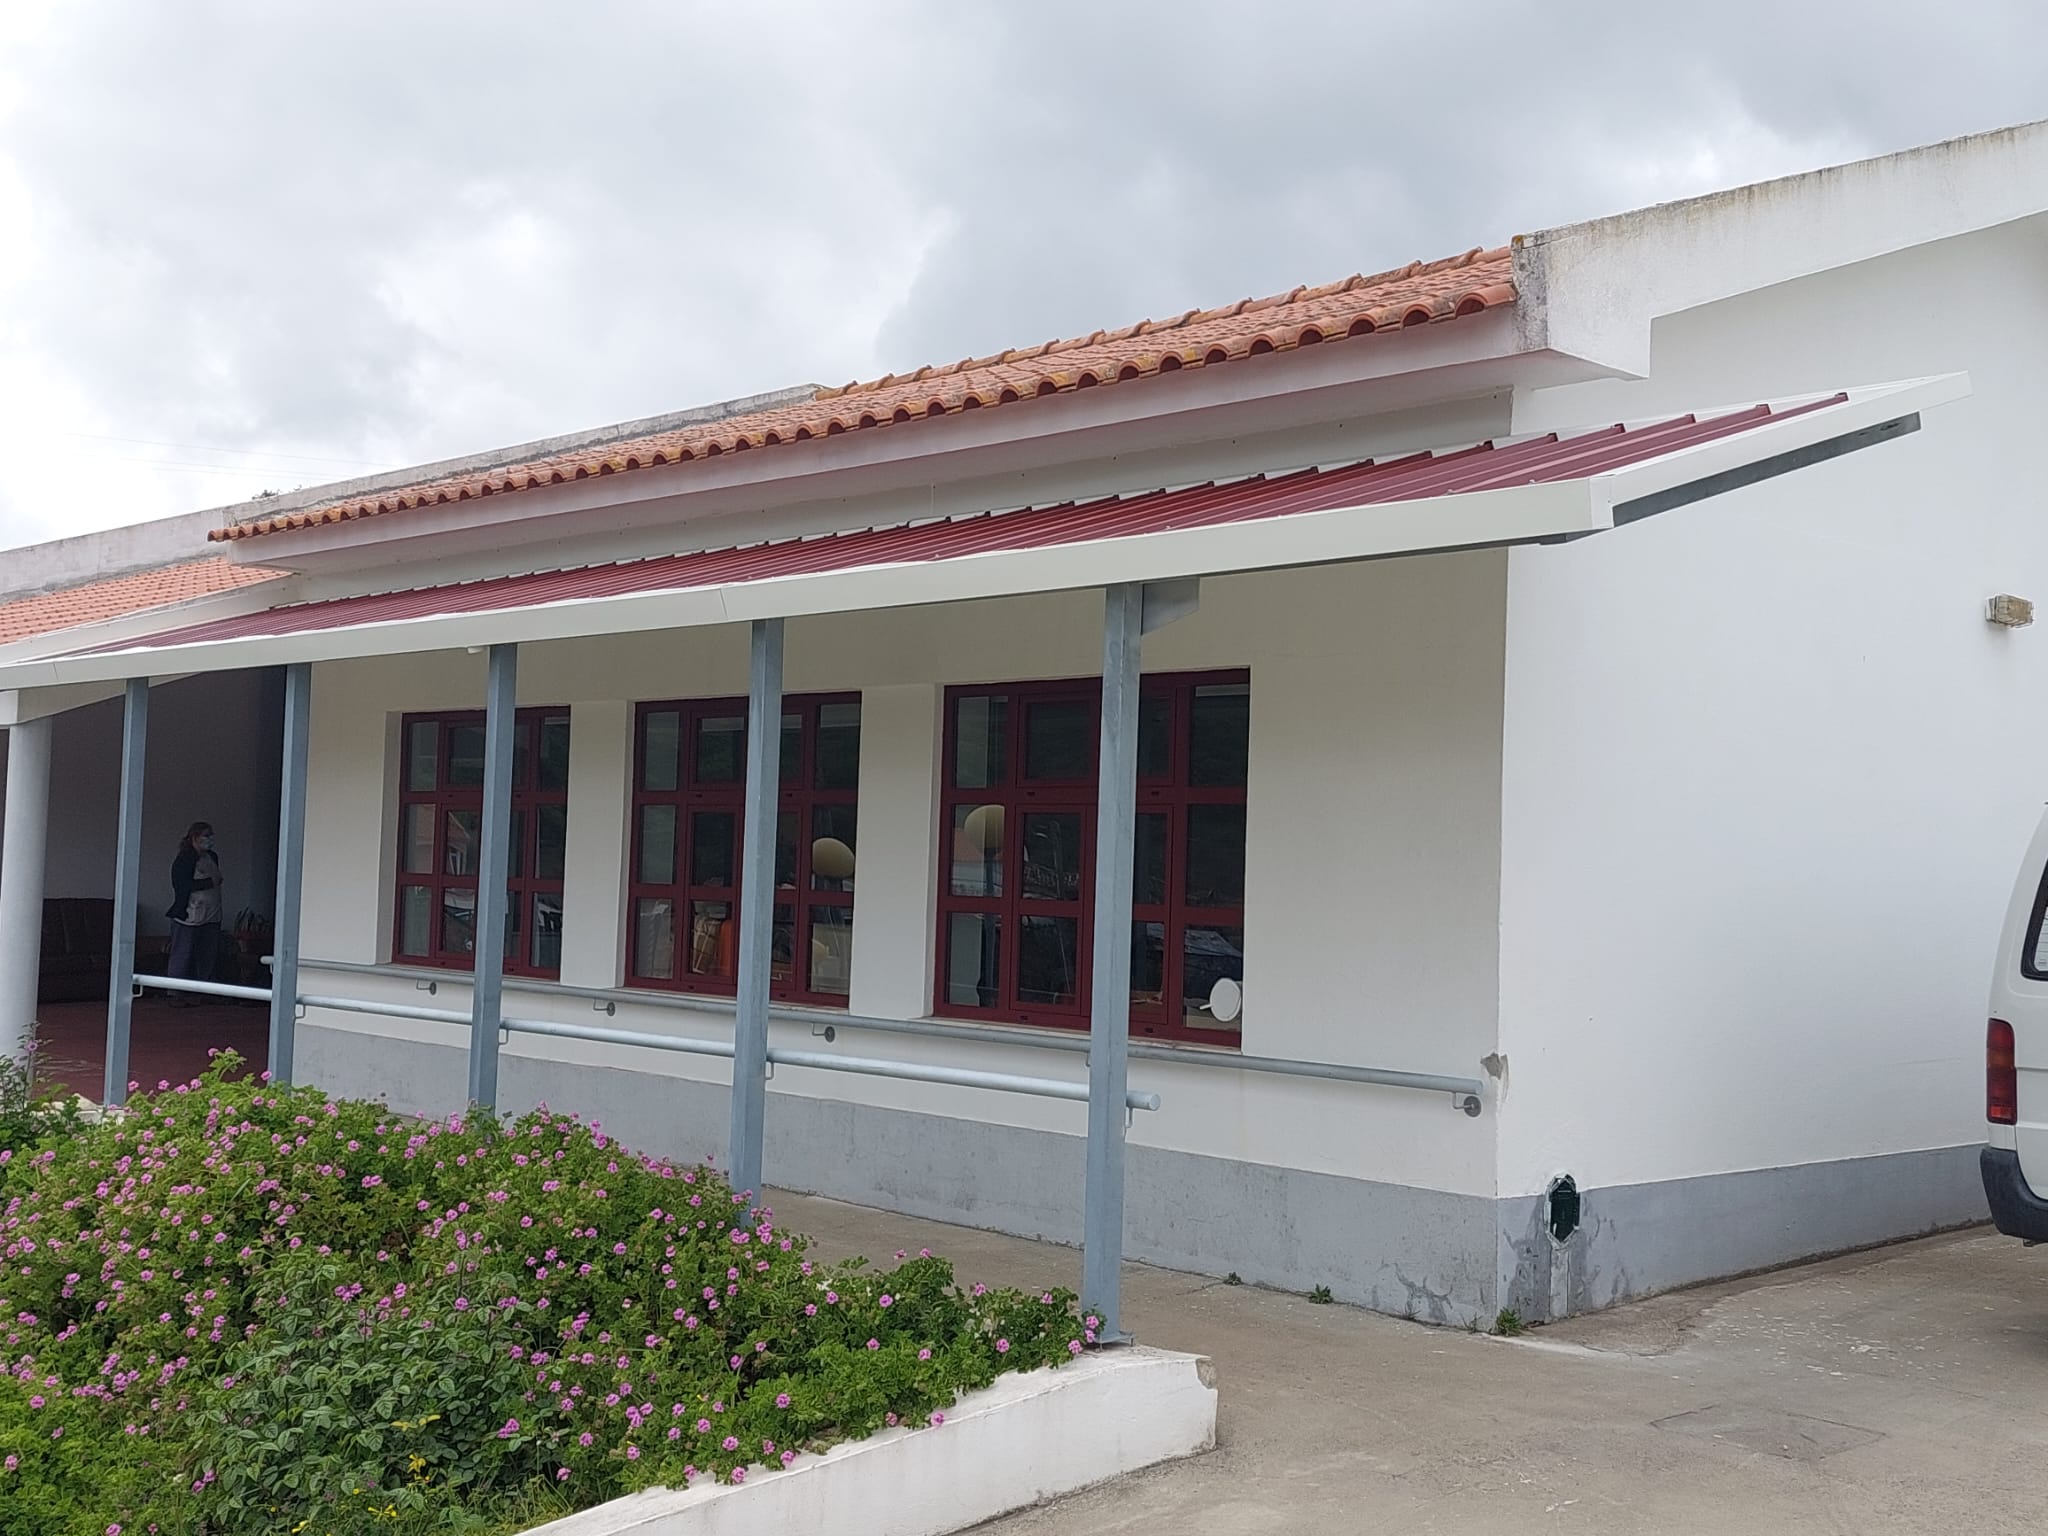 Centro Social e Paroquial de São Saturnino de Fanhões – Centro de Dia – Colocação de Pala de Cobertura melhorando o conforto do acesso às instalações.